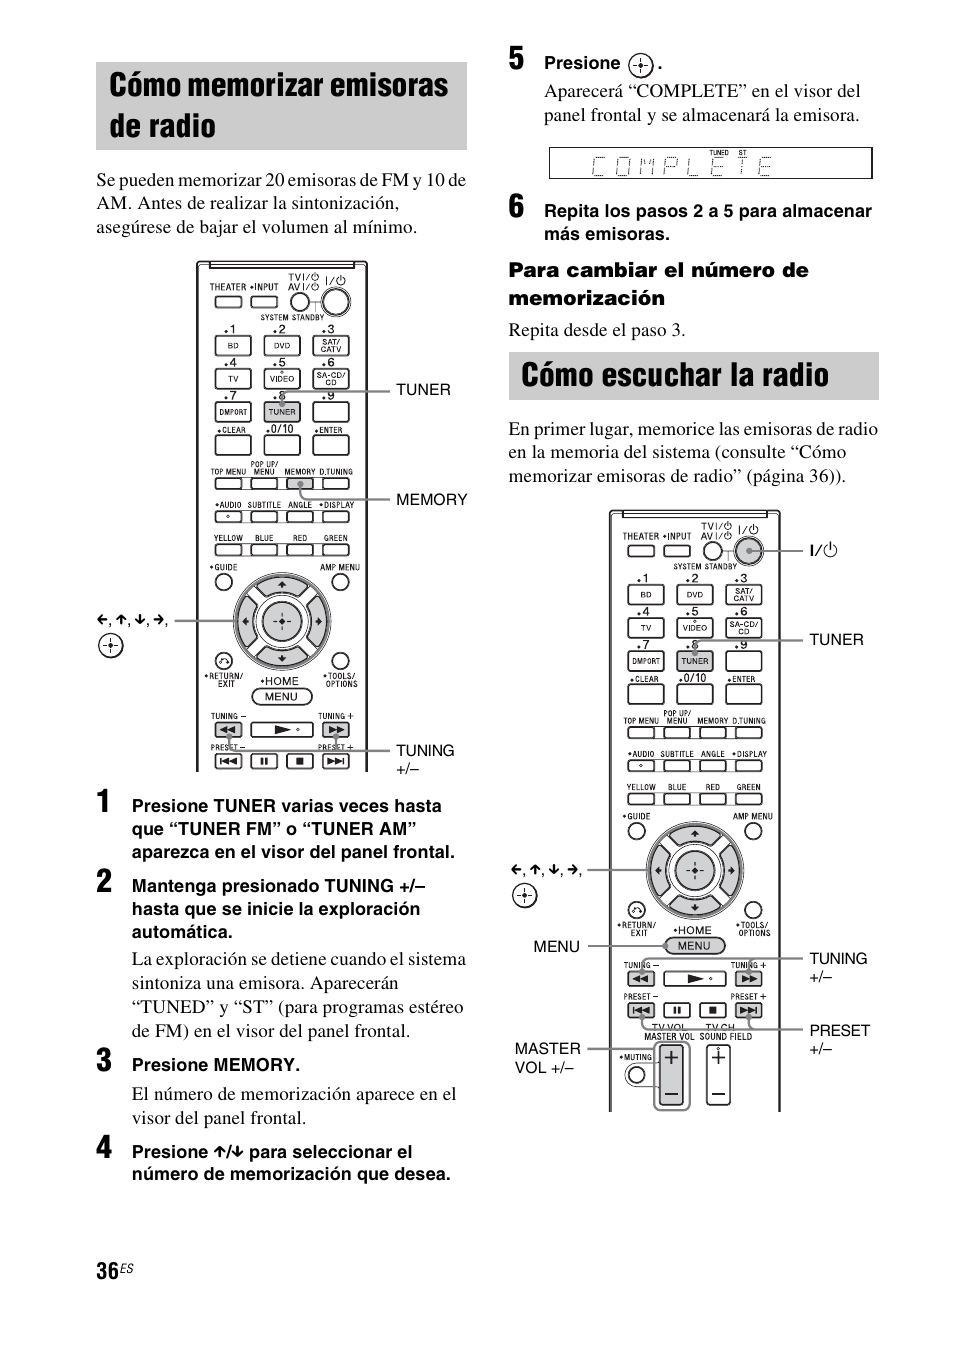 Cómo memorizar emisoras de radio, Cómo escuchar la radio | Sony nenuzhniy  User Manual | Page 152 / 180 | Original mode